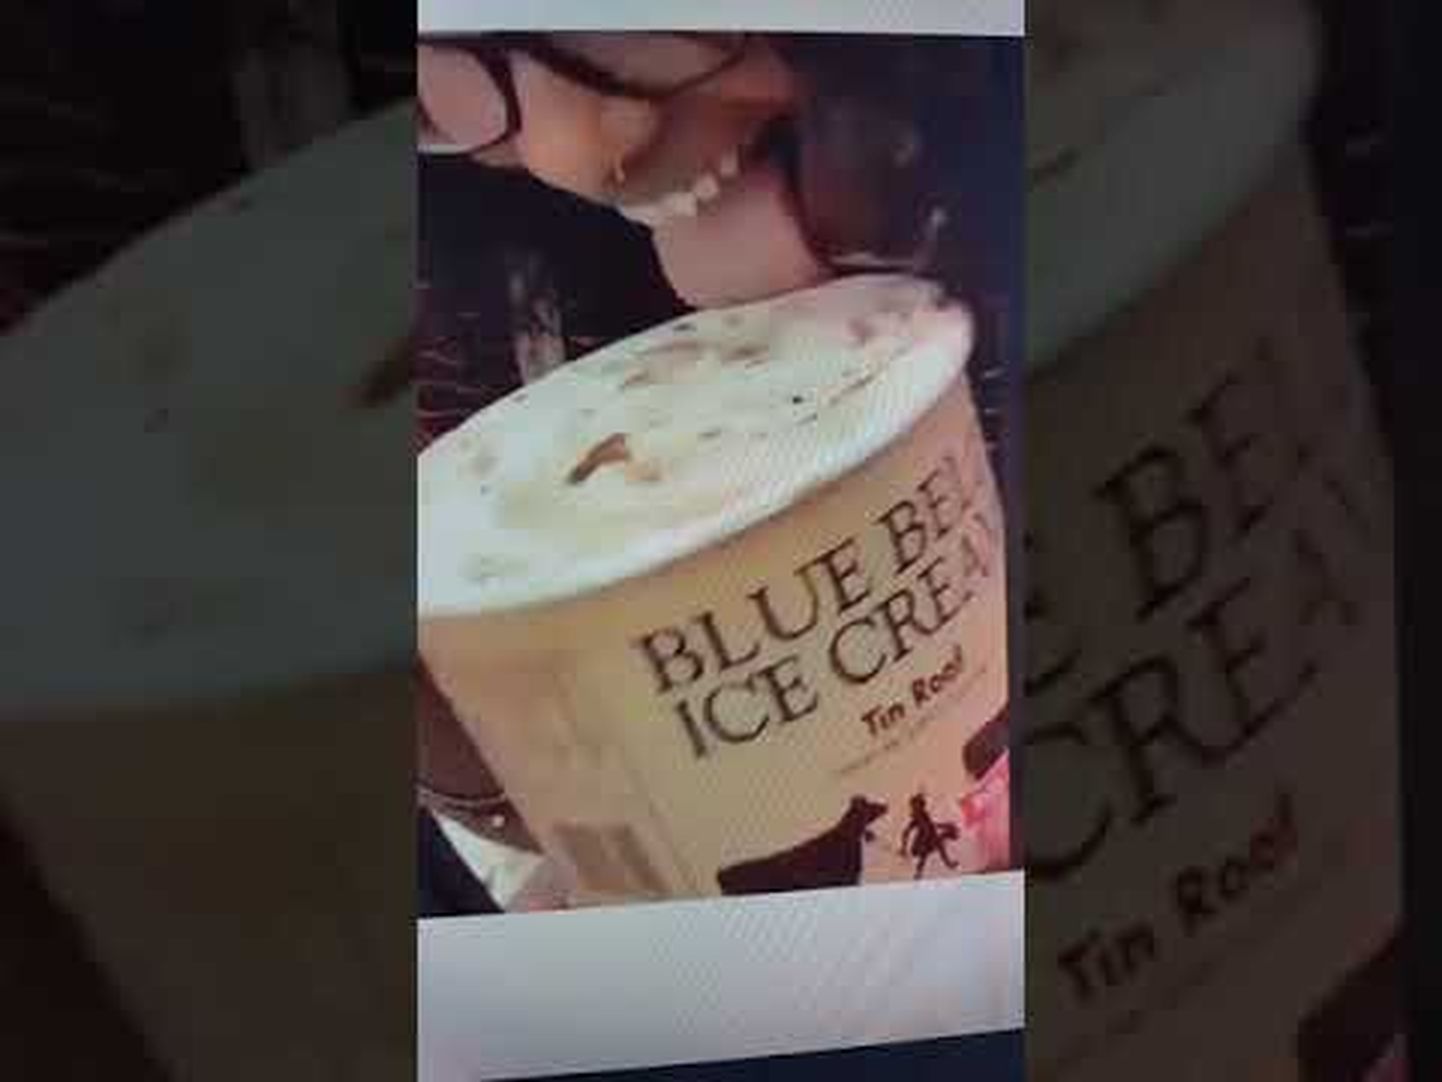 Ameeriklanna lakkus Walmarti ostukeskuse toidupoes Blue Belli jäätist ja pani selle siis külmletti tagasi